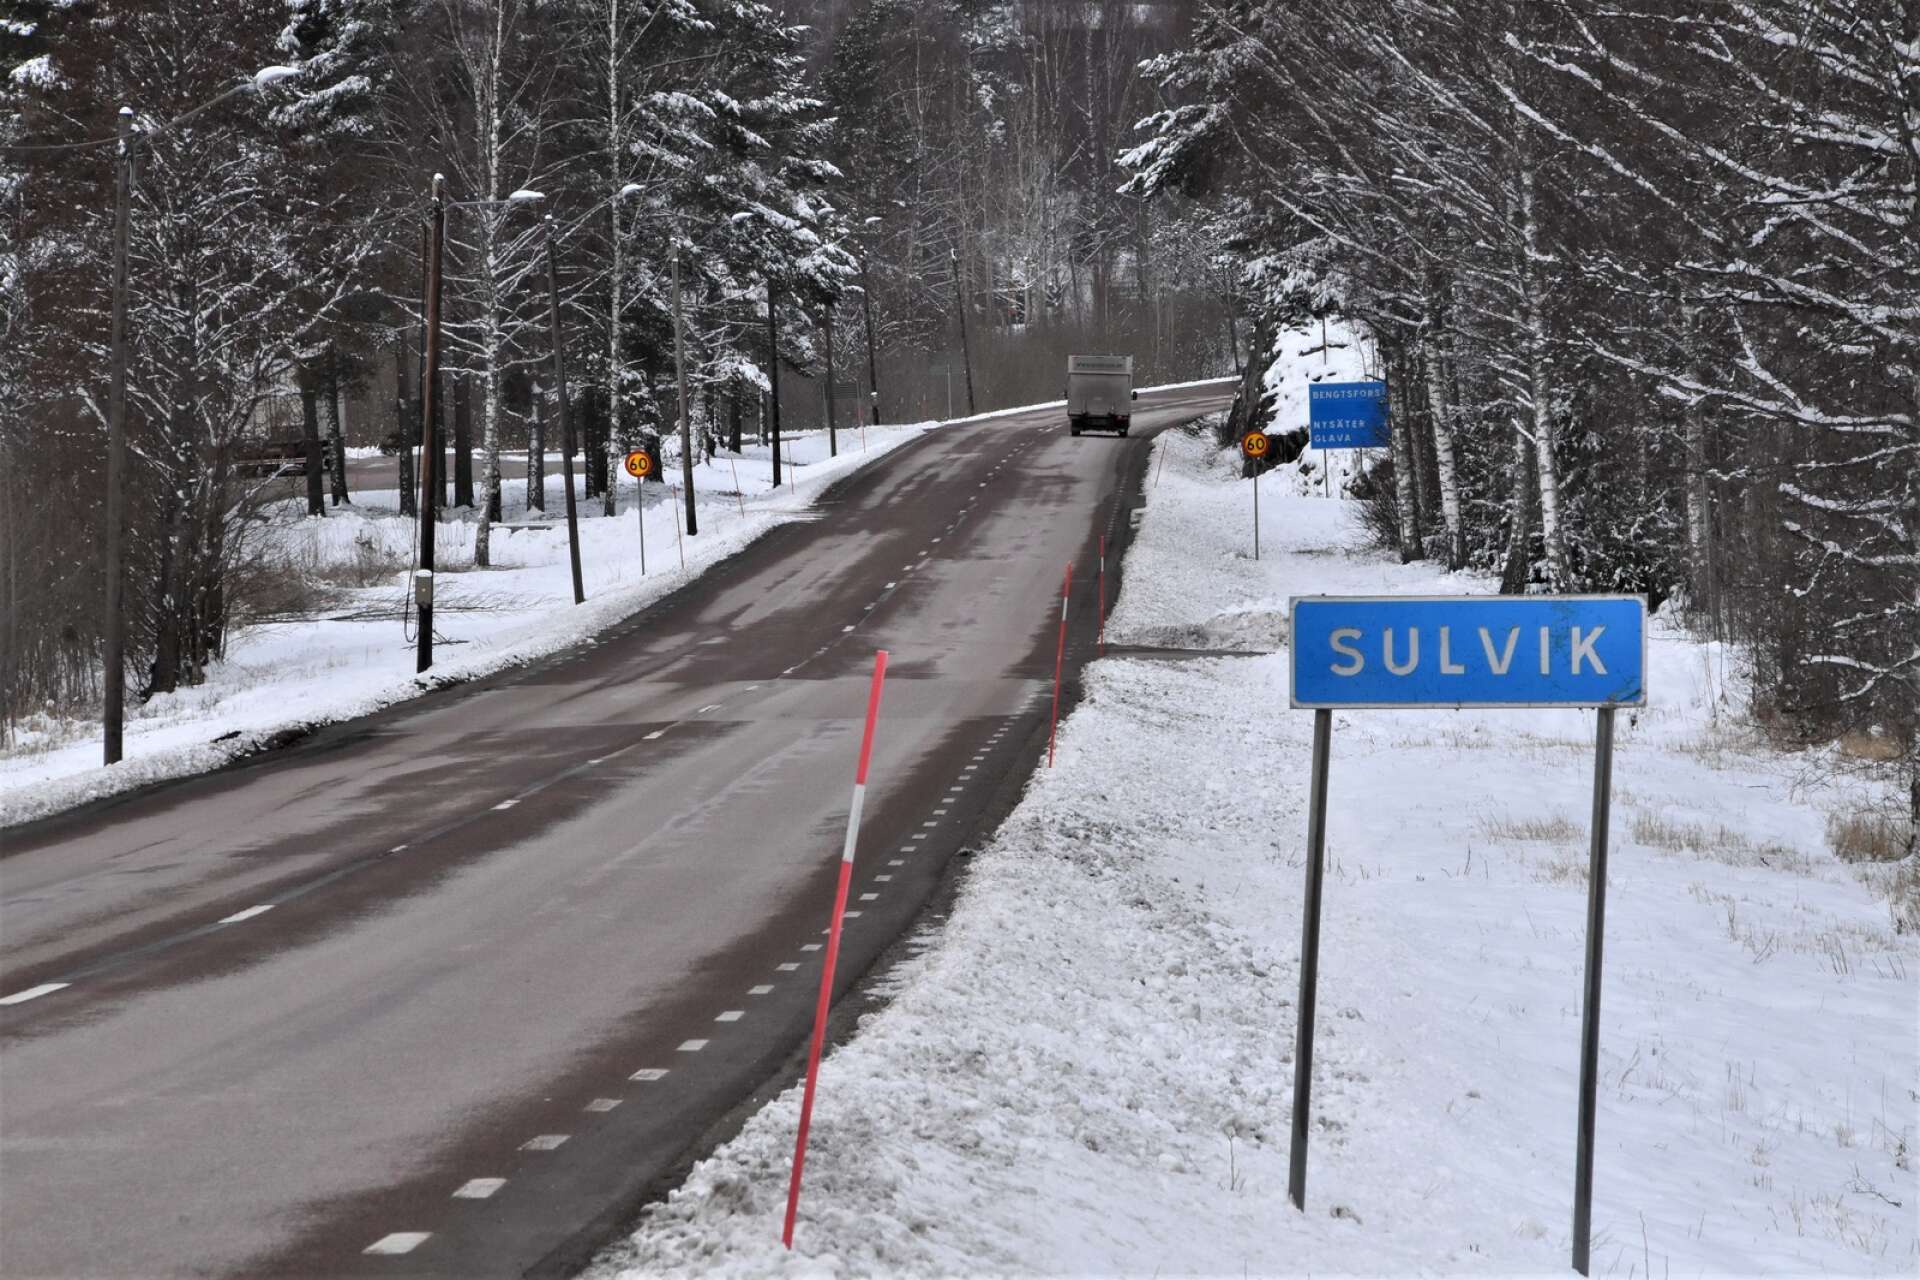 Arbetsgruppen uttrycker att Sulvik är anonymt bakom kurvan. Ortsnamnskylten visar att ett samhälle närmar sig, men bilister ser inte att det finns bebyggelse eller korsning förrän bakom kurvan.